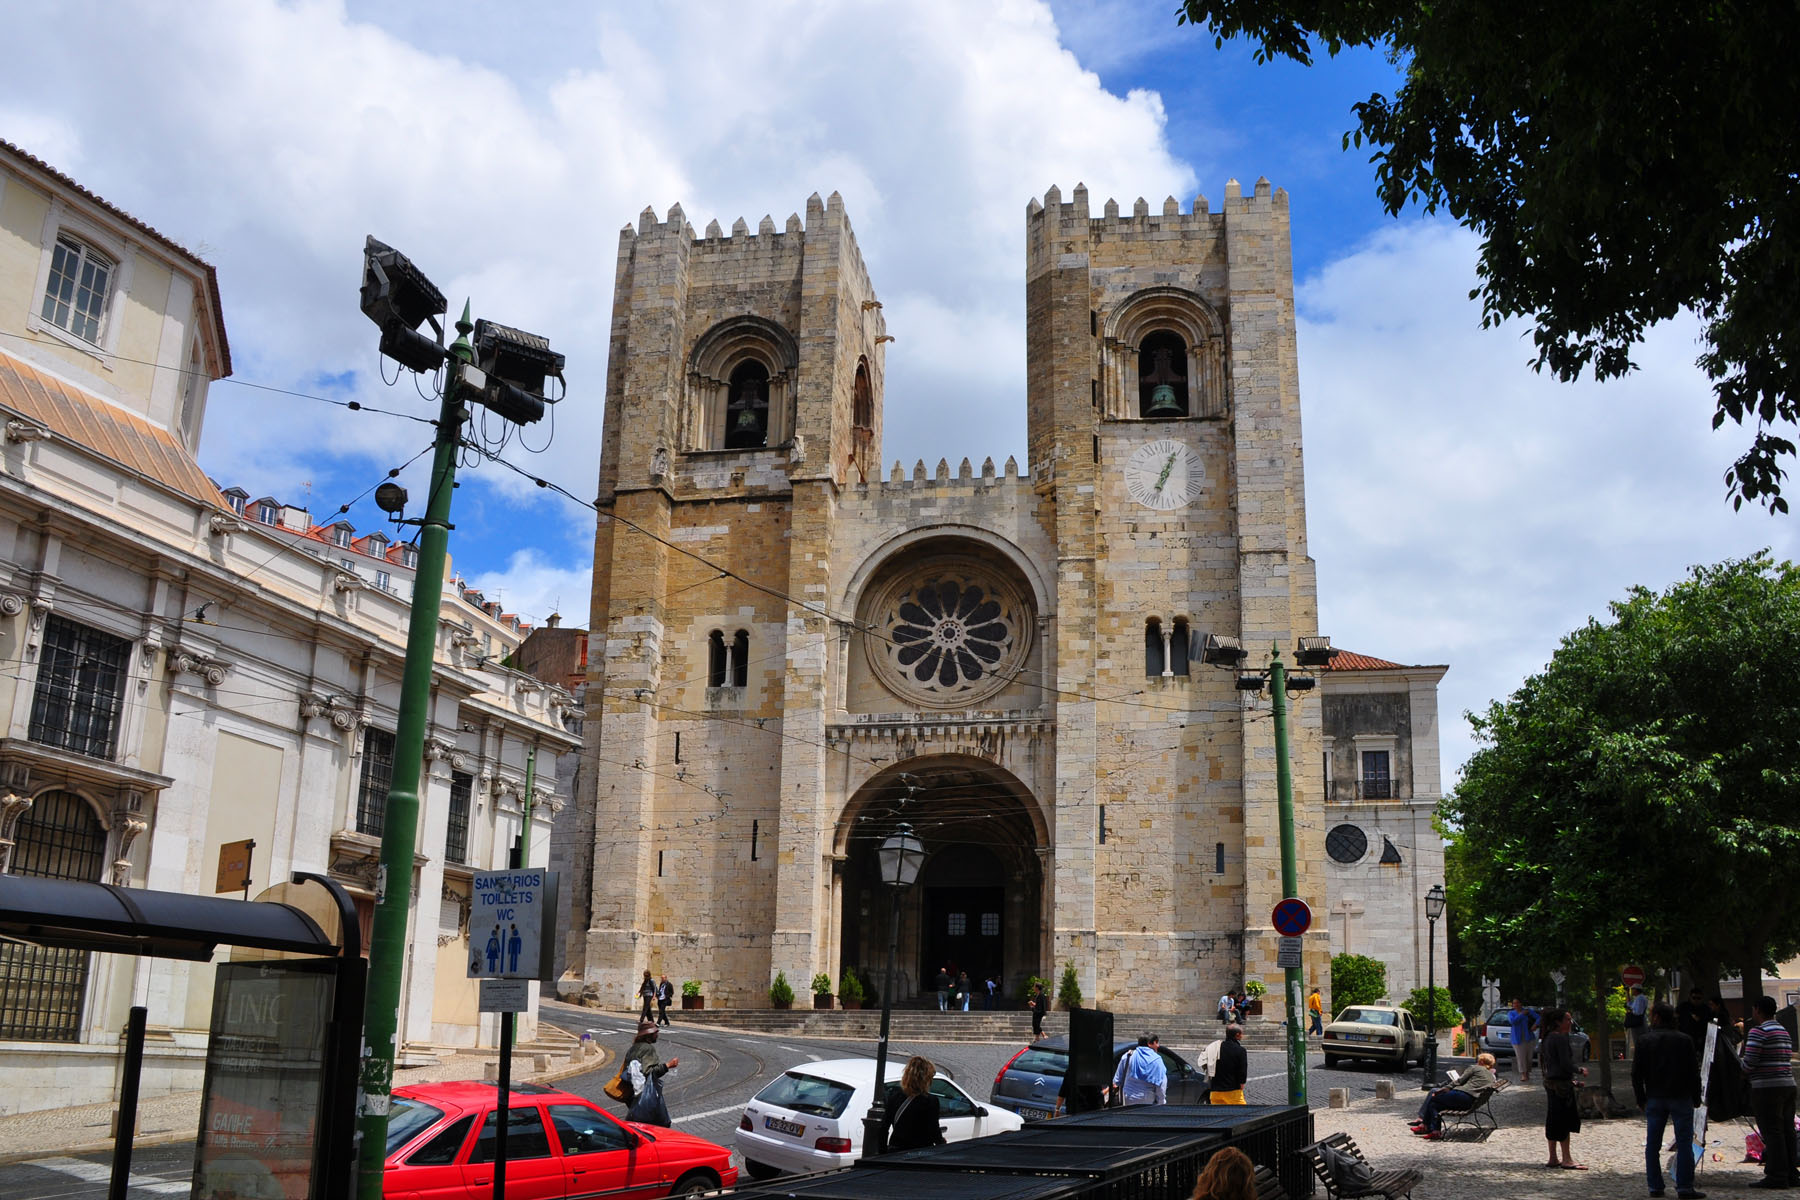 Cathédrale de Lisbonne (Santa Maria Maior)